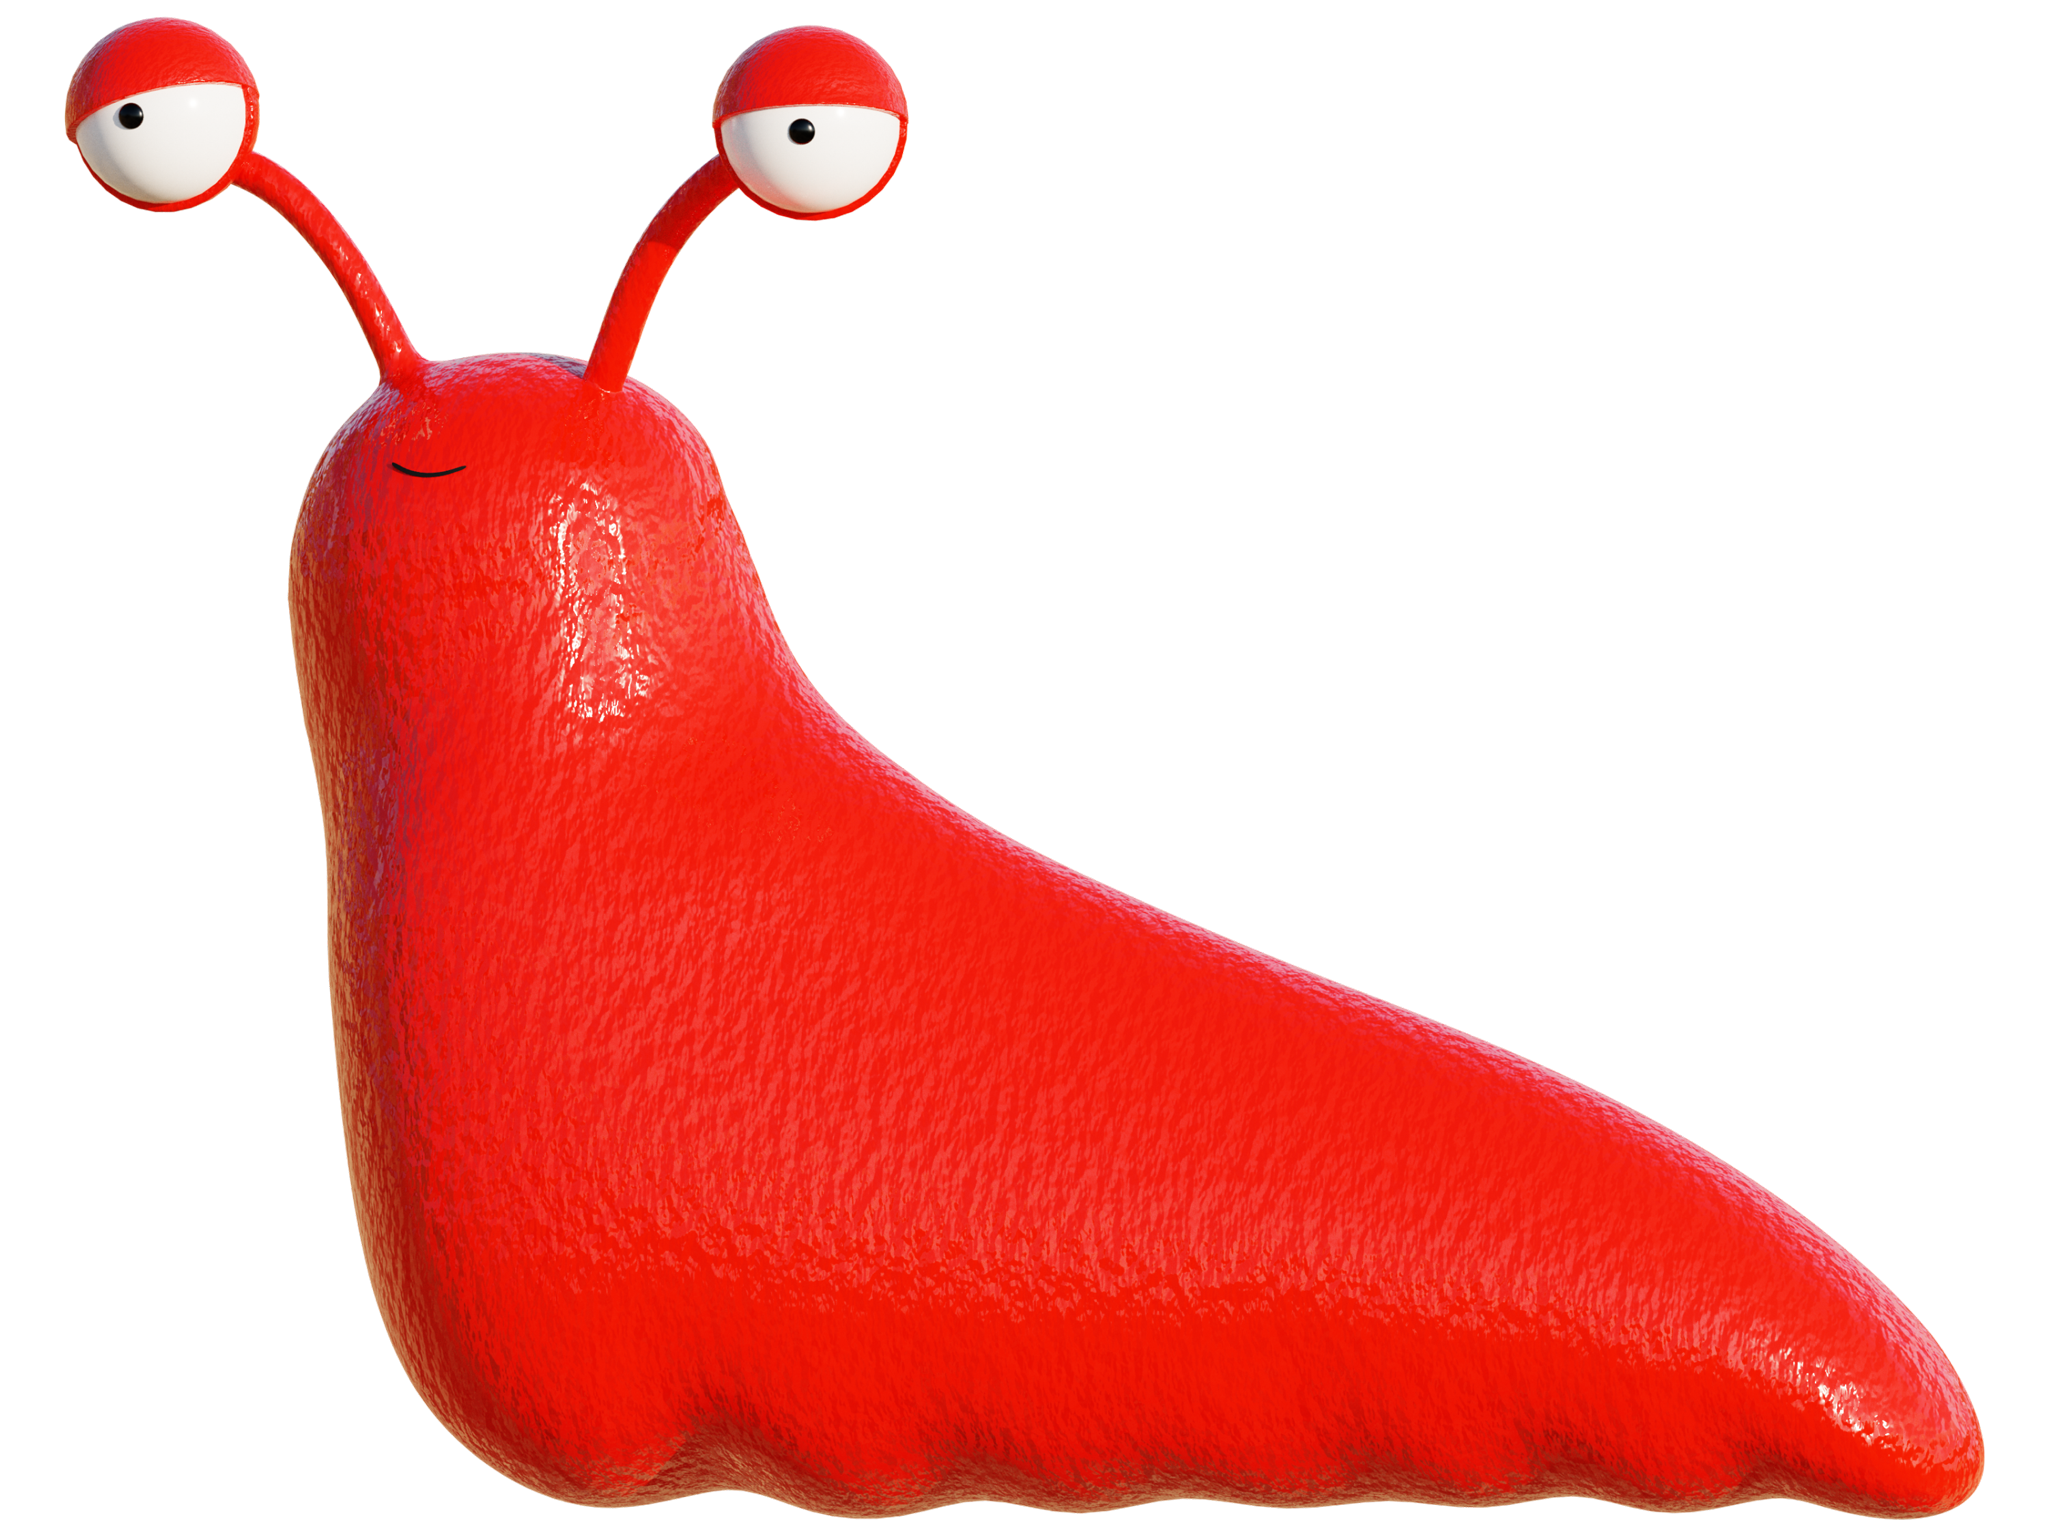 A three-dimensional red cartoon slug